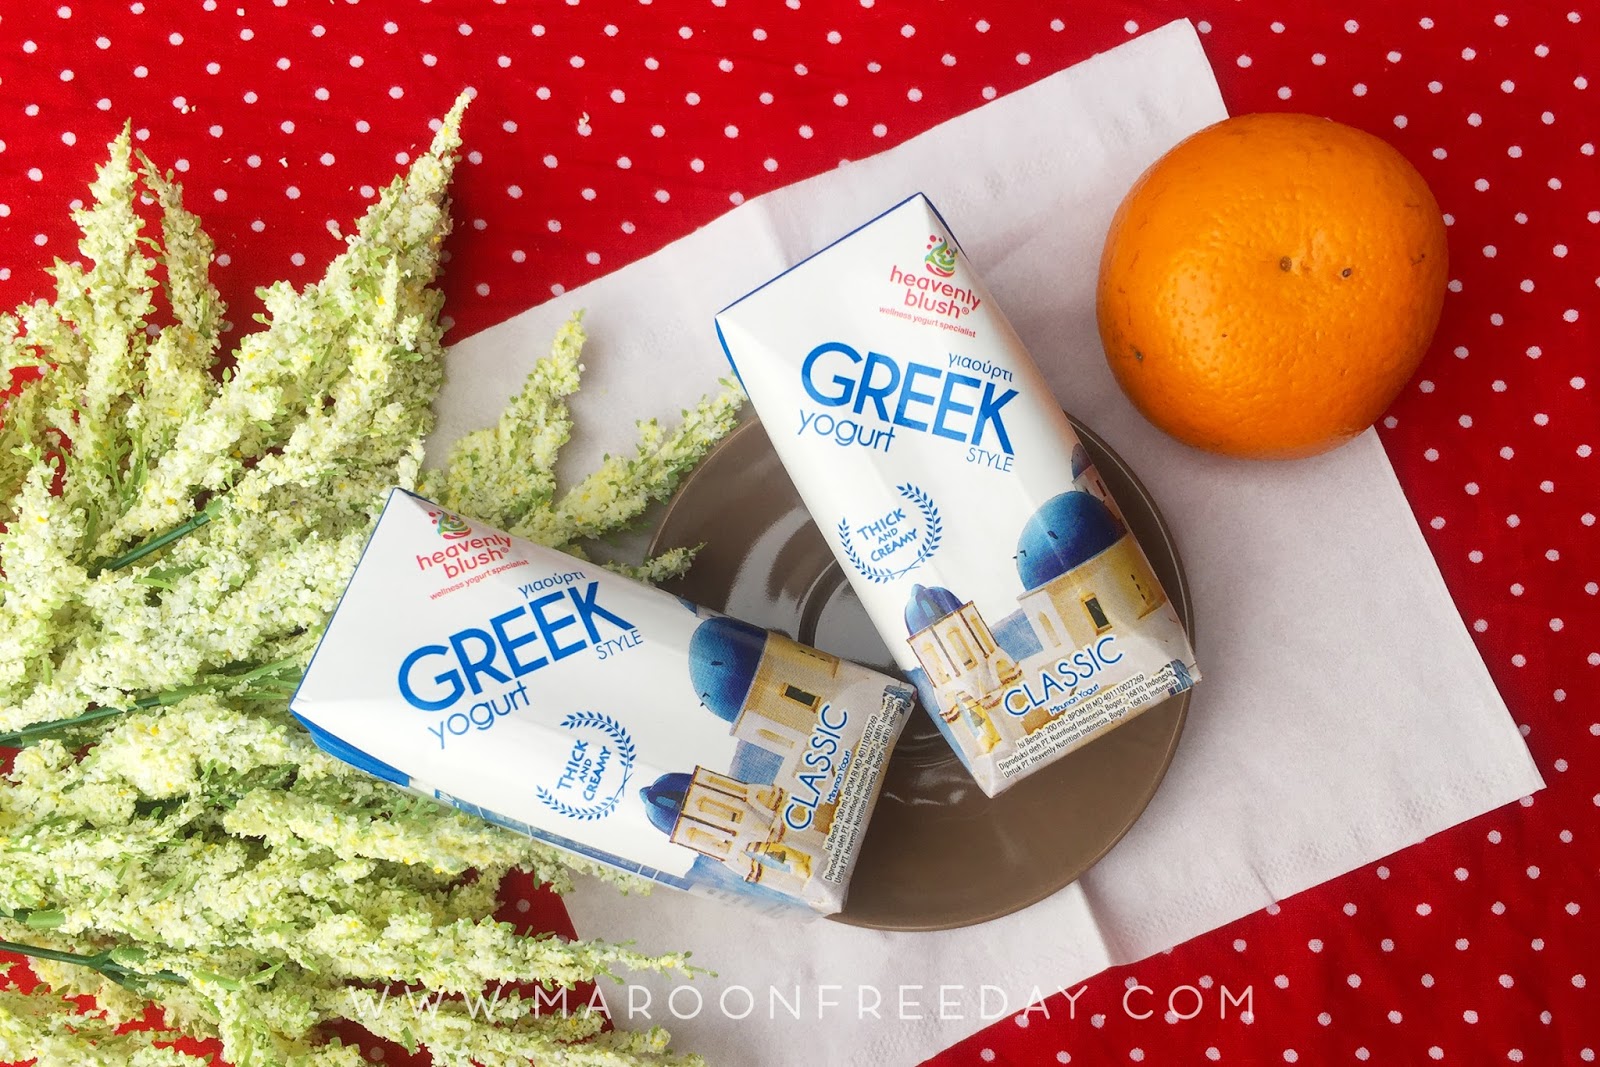 Heavenly Blush Greek Yogurt